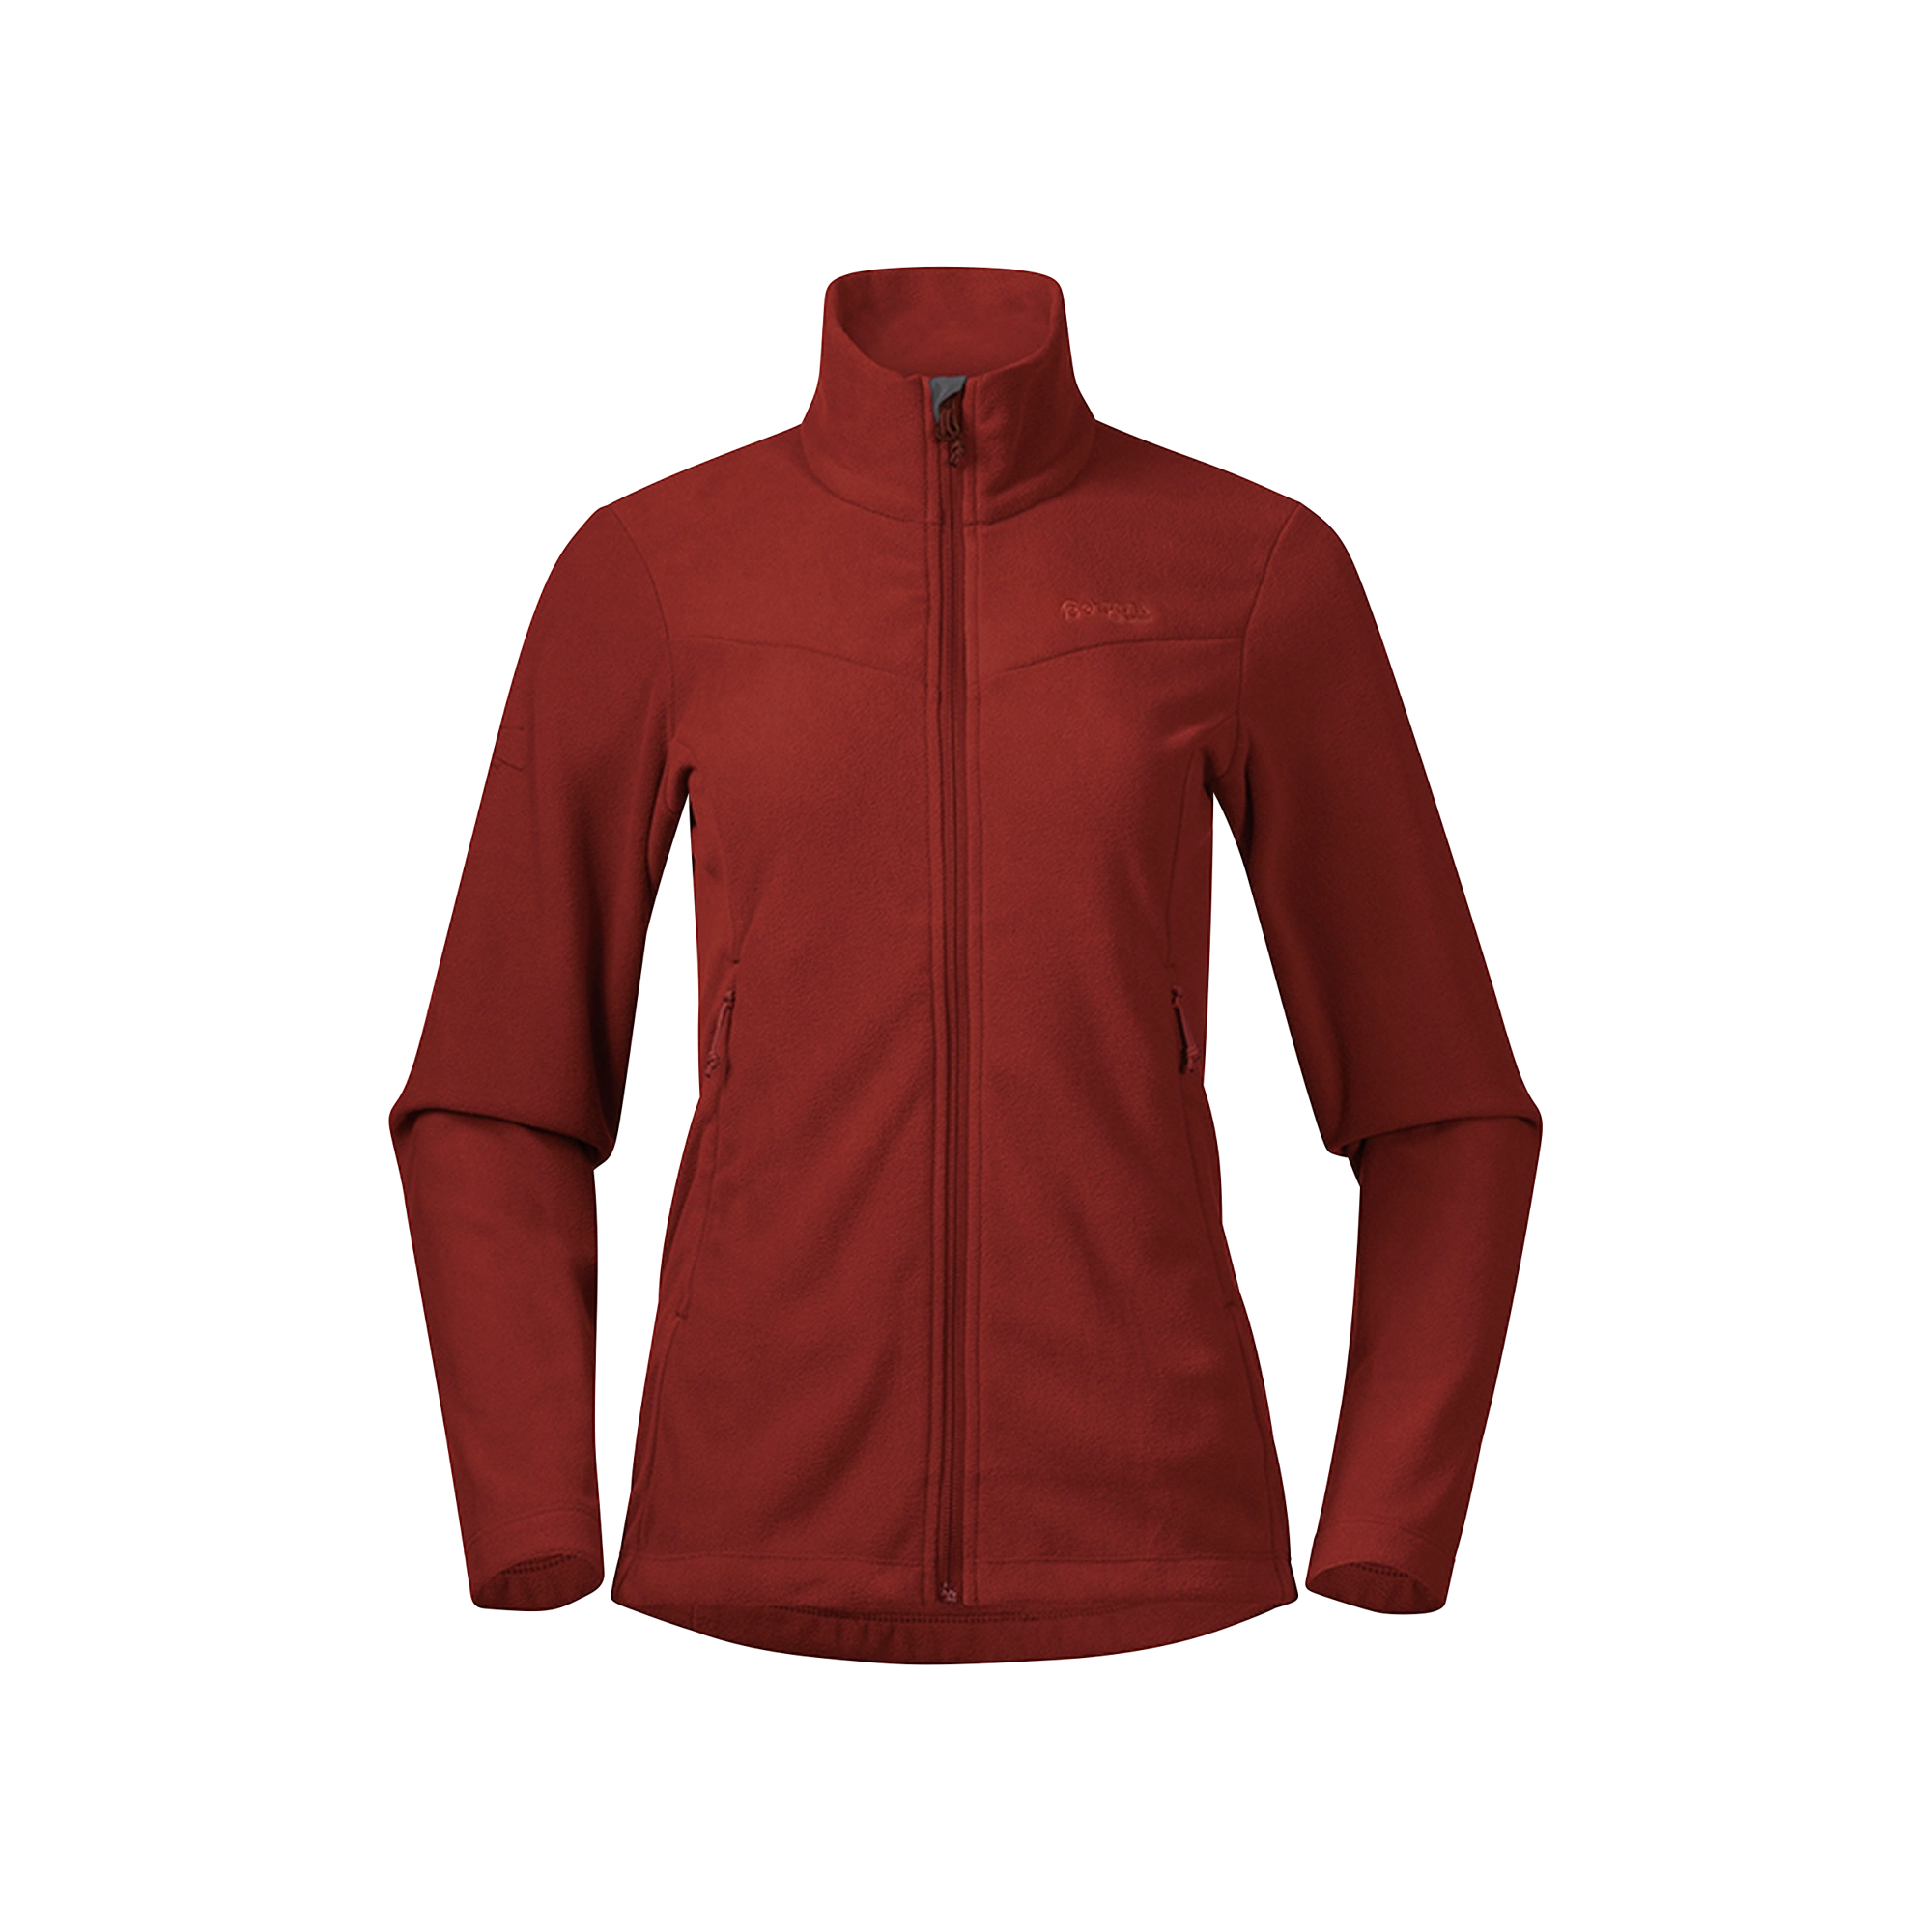 Finnsnes Fleece Jacket Wm, chianti red